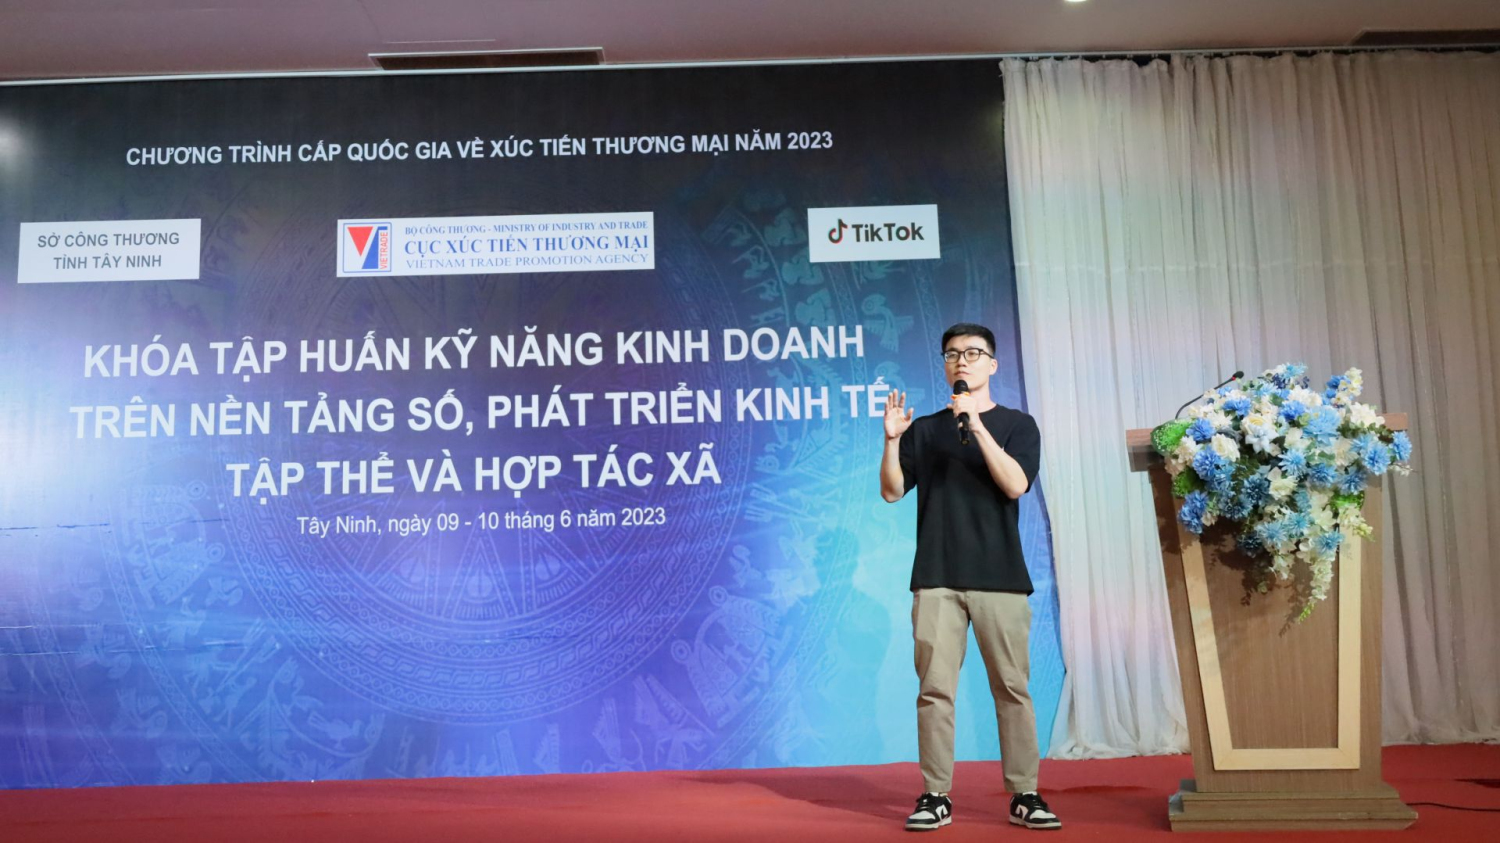 Đại diện nền tảng xã hội Tiktok Việt Nam trình bày cách thức giới thiệu và trình chiếu sản phẩm trực tiếp trên môi trường số (livestream).